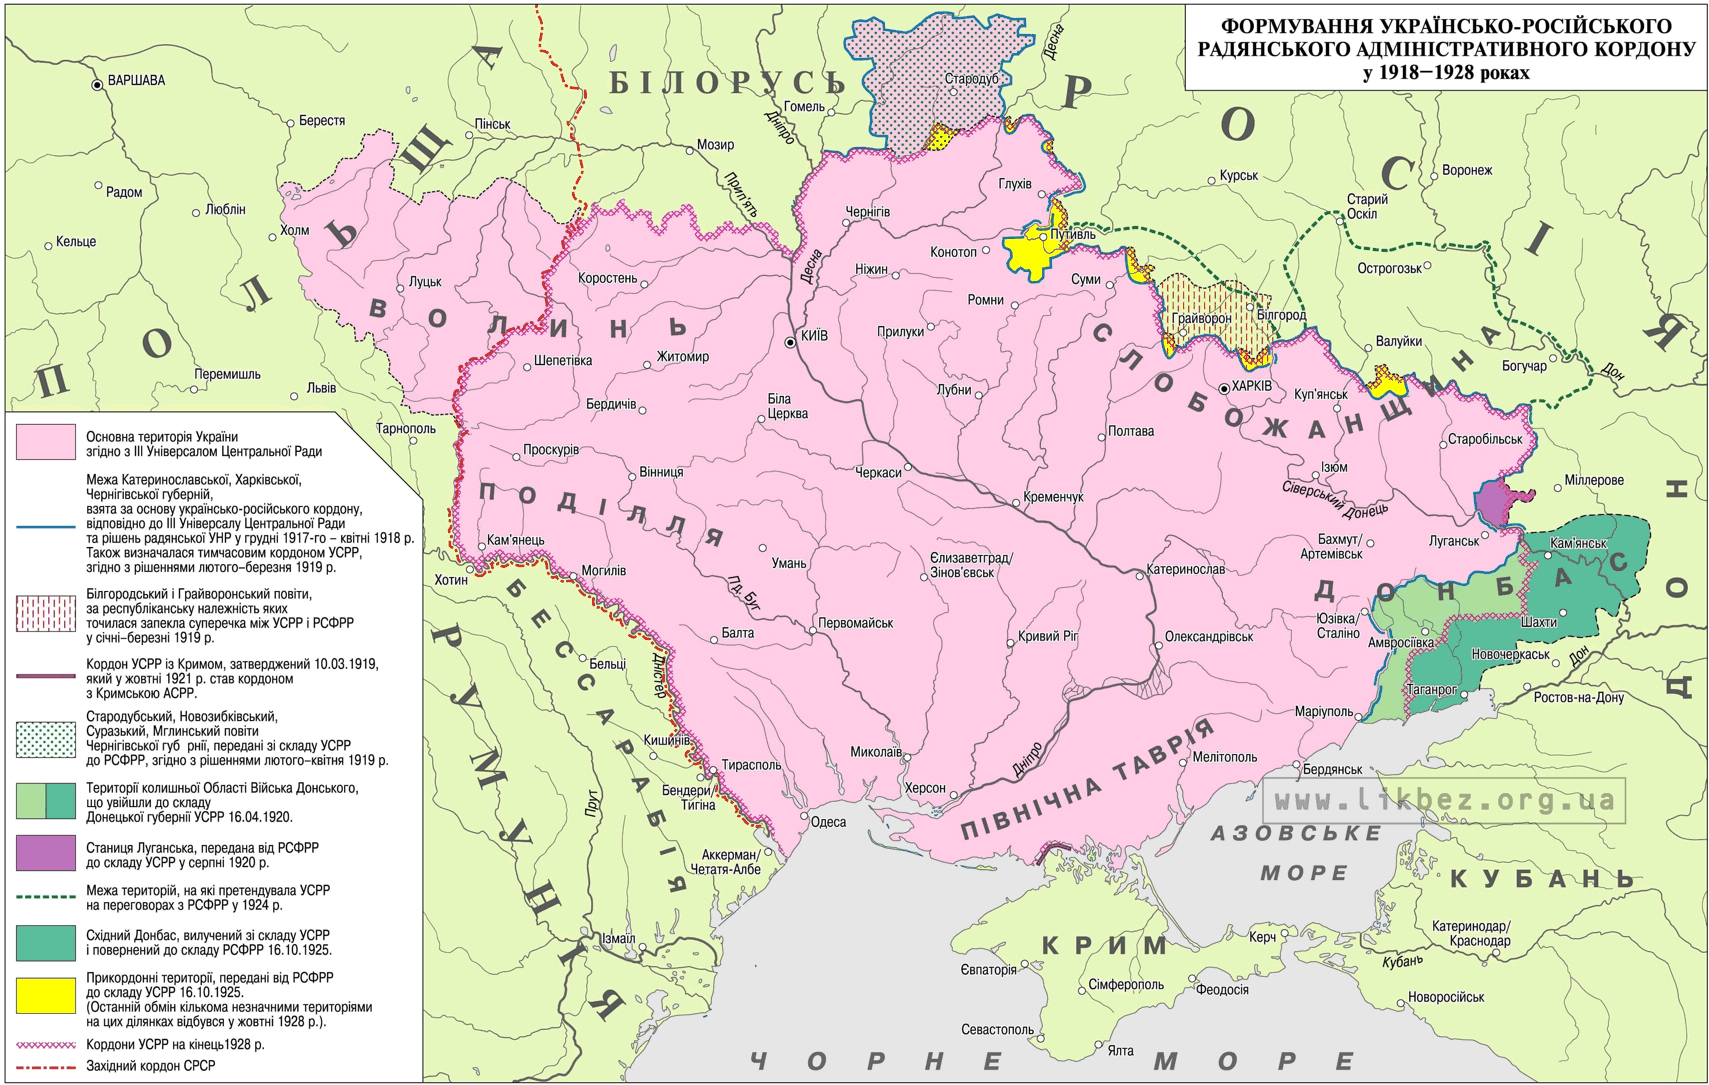 Формирование украино-российской административной границы в 1919-1928 годах